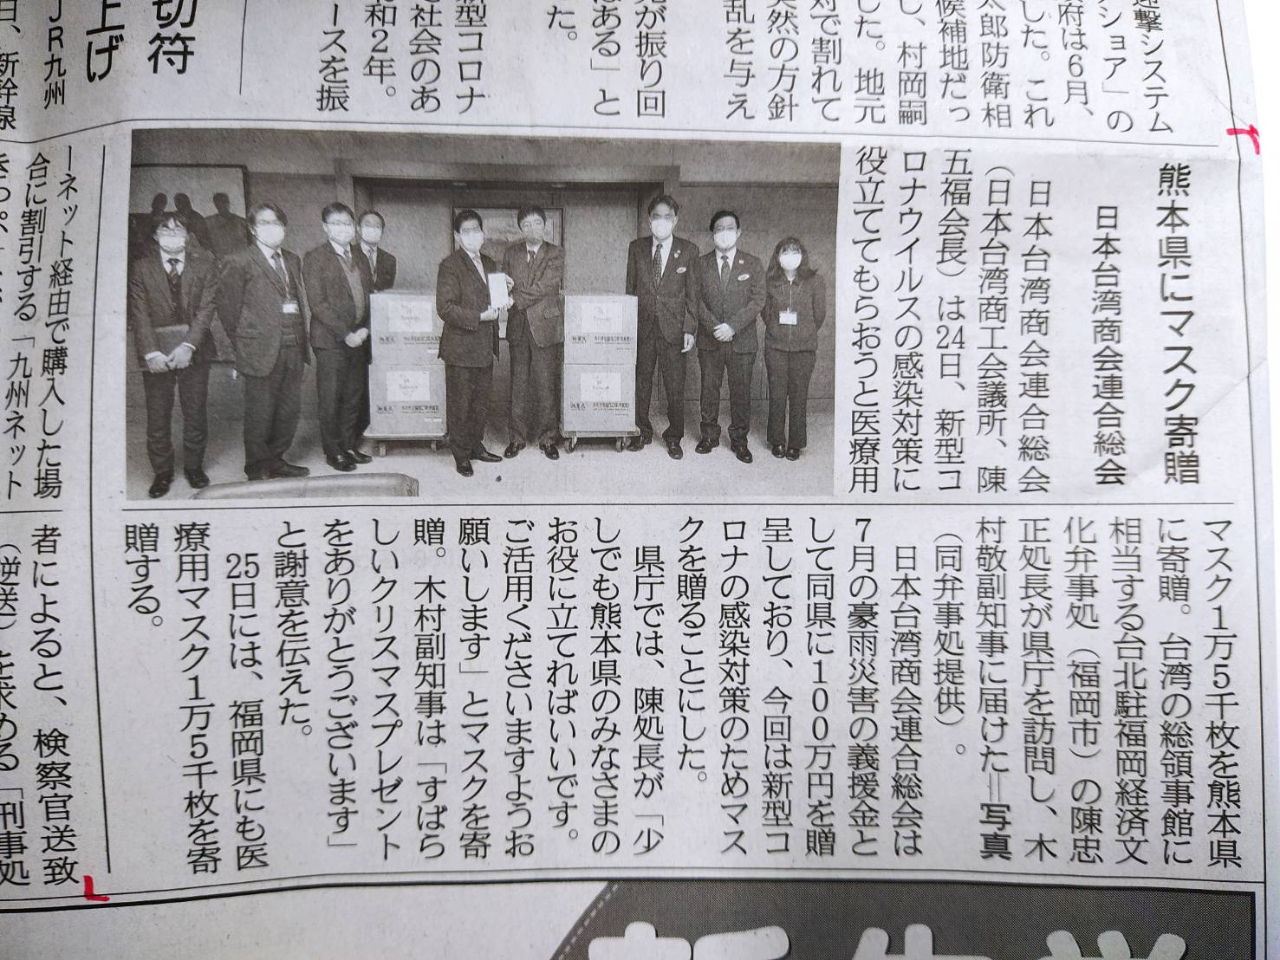 【12月25日産経新聞】日本台湾商会連合会総会陳五福会長が熊本県、福岡県にマスク各1万5千枚寄贈。